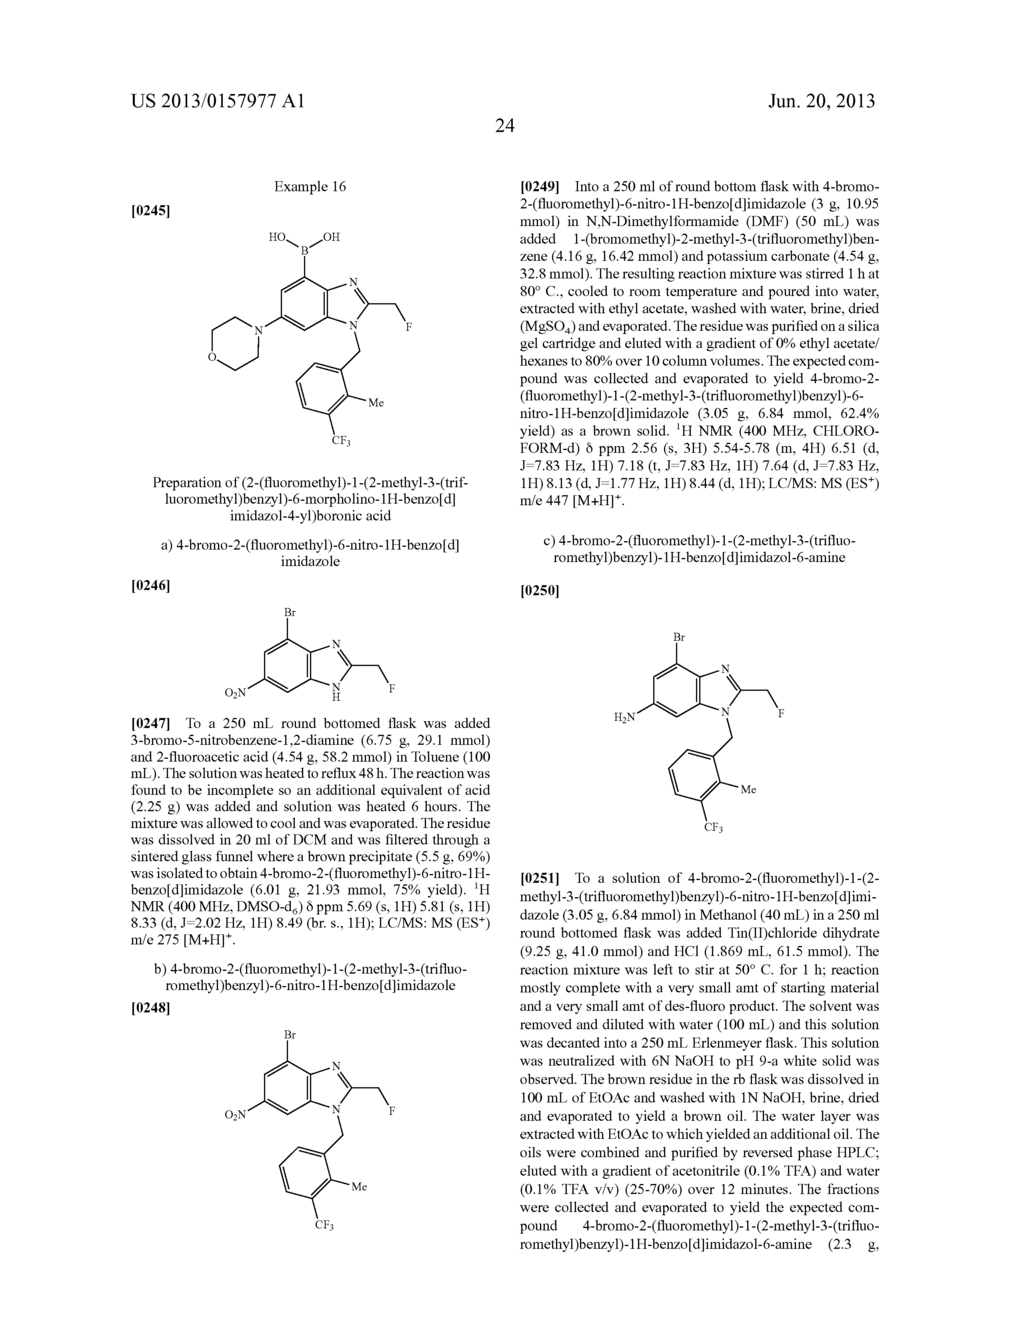 Benzimidazole Boronic Acid Derivatives As PI3 Kinase Inhibitors - diagram, schematic, and image 25